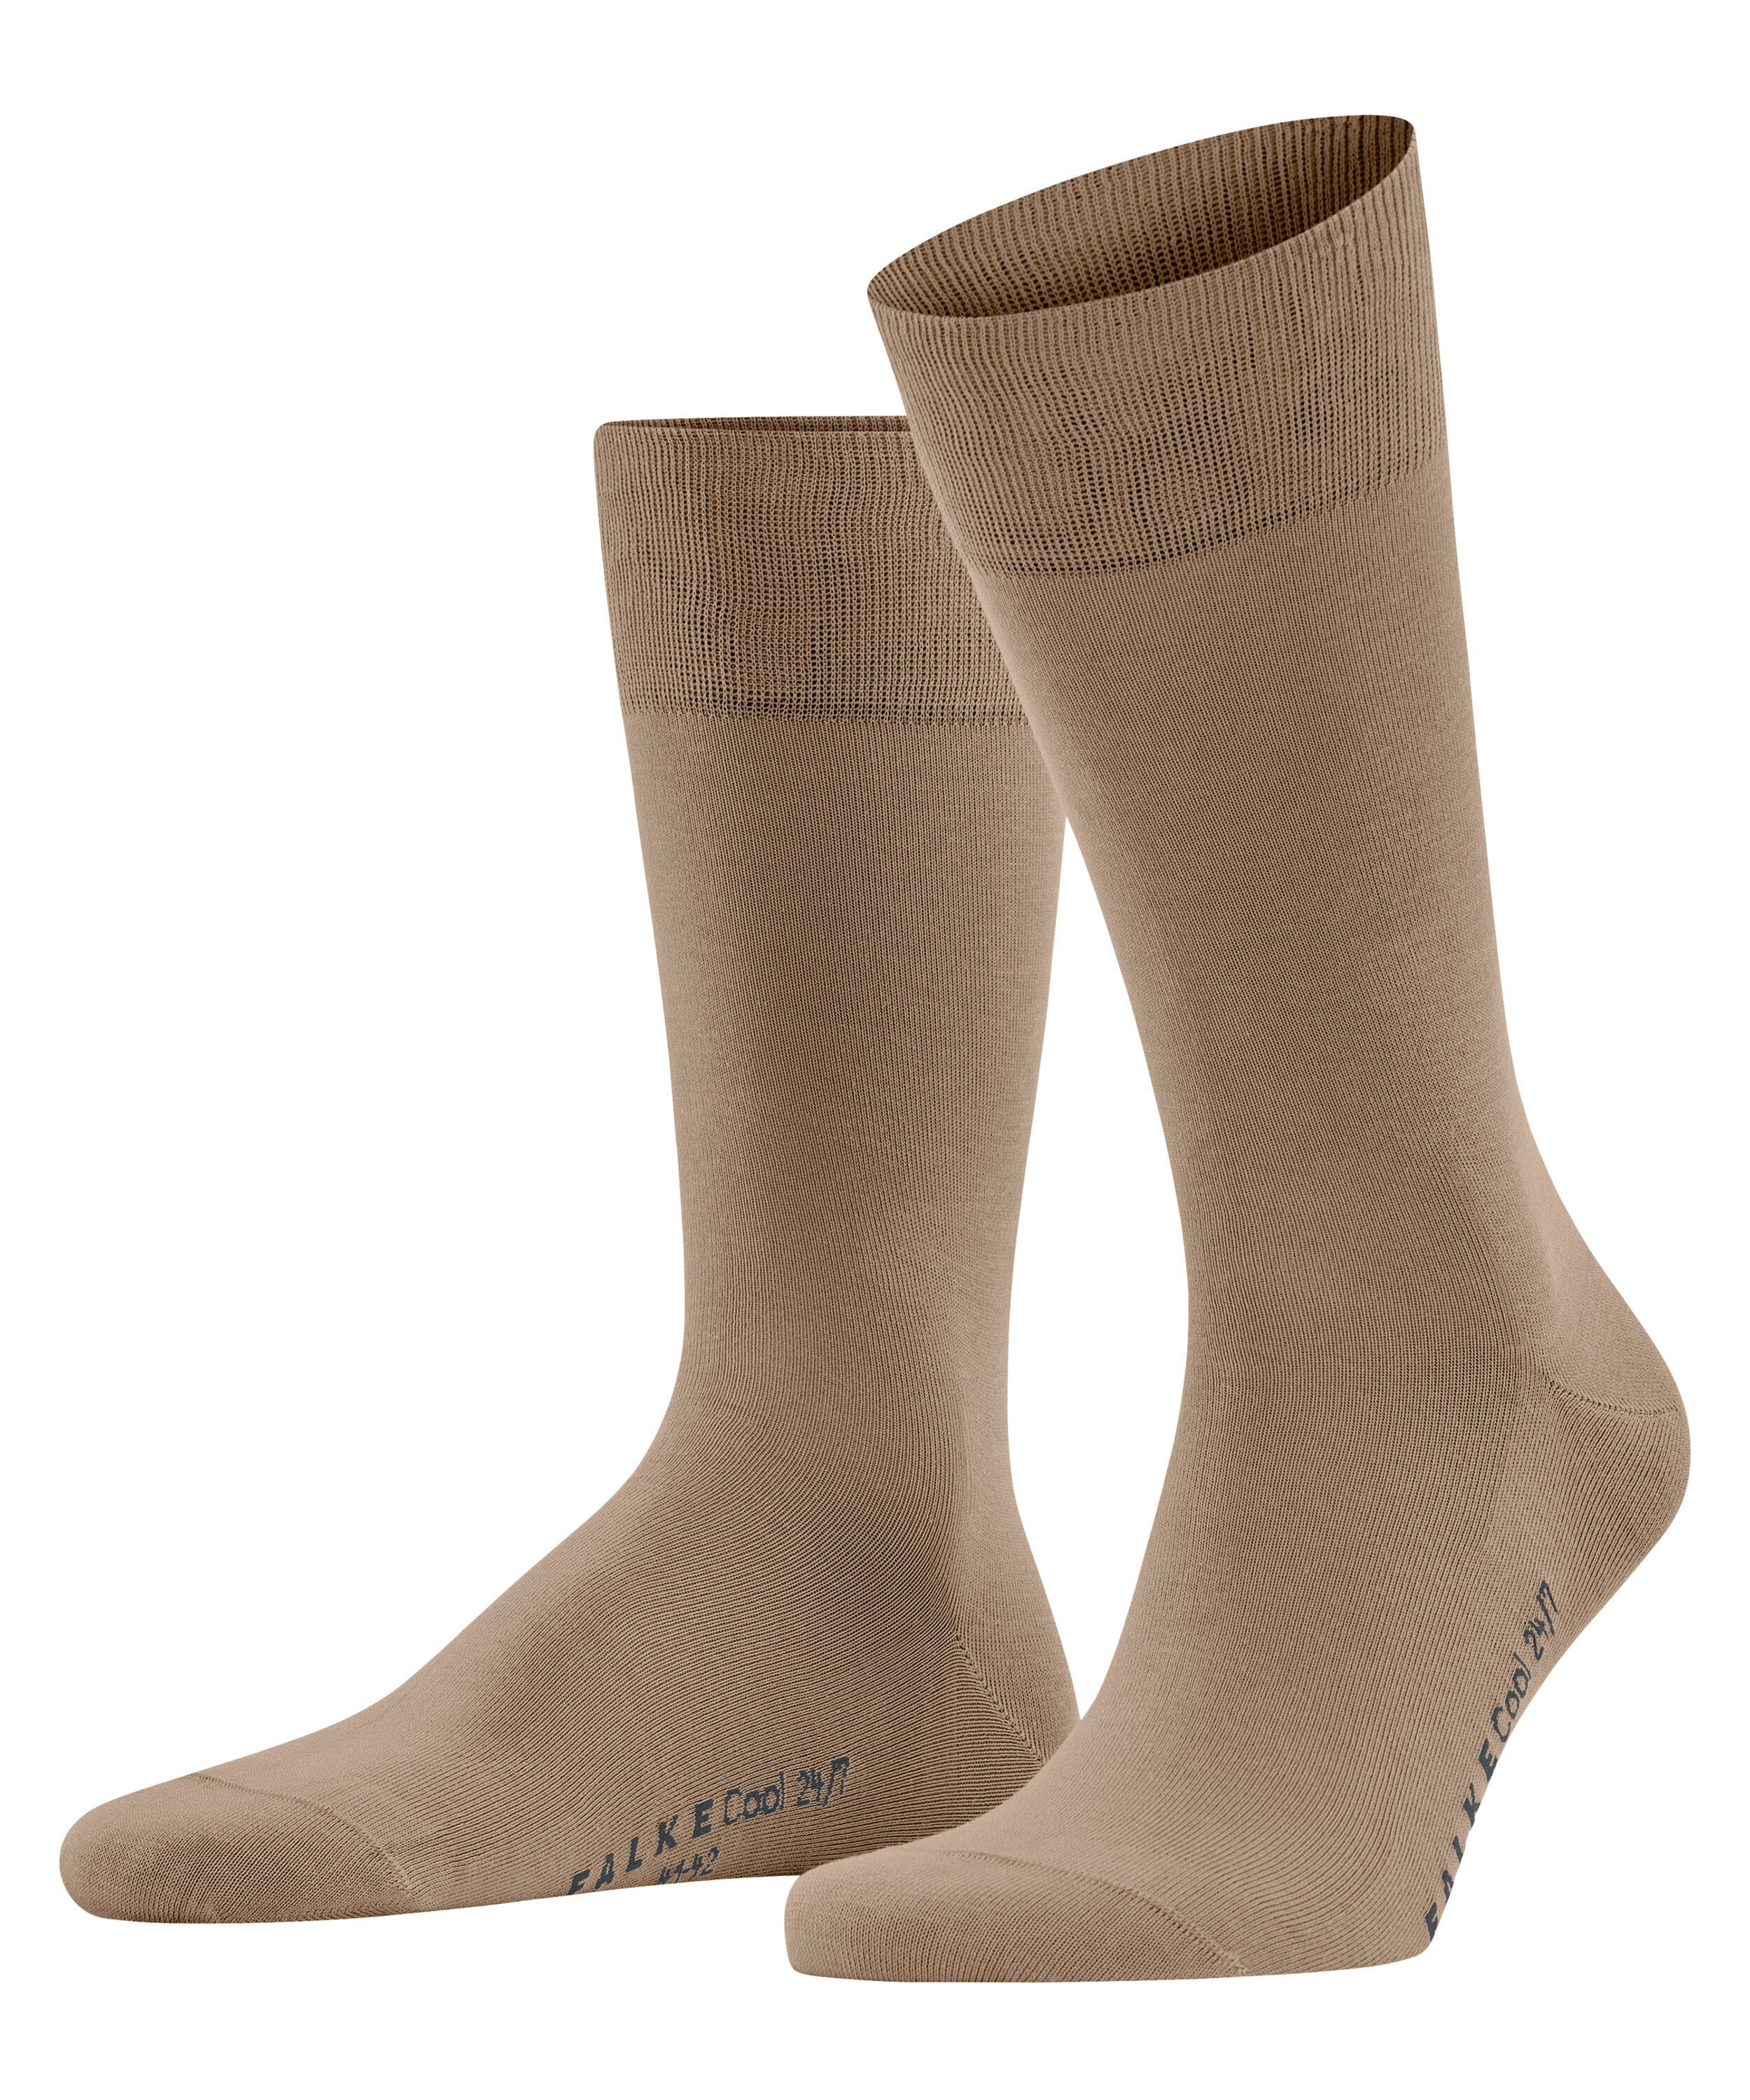 FALKE Socken Cool 24/7 (1-Paar) camel (5038)